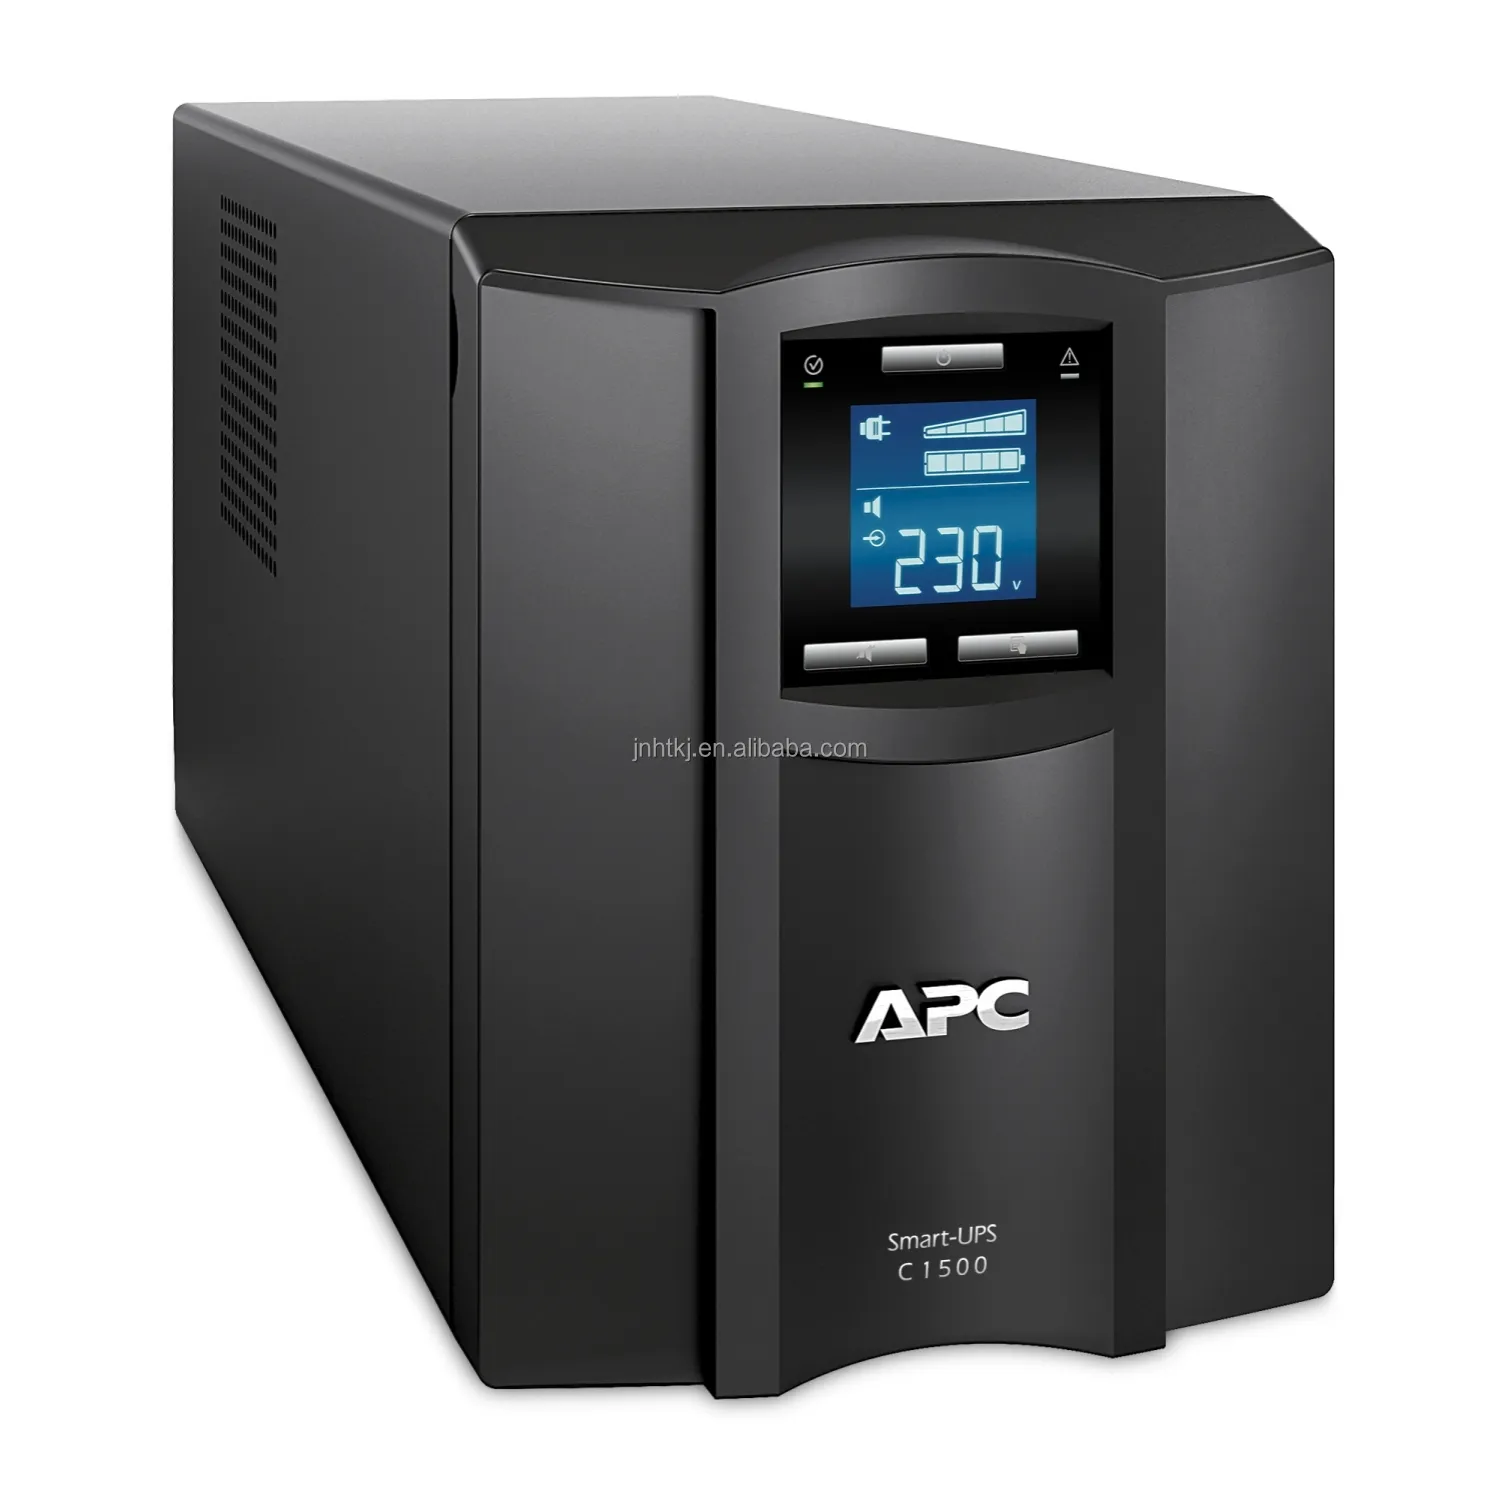 APC UPS SMC1500I-CH 스마트 UPS C 라인 인터랙티브 1500VA 900W, APC 스마트 UPS 1500VA 900W, APC 스마트 UPS 1500VA LCD 230V